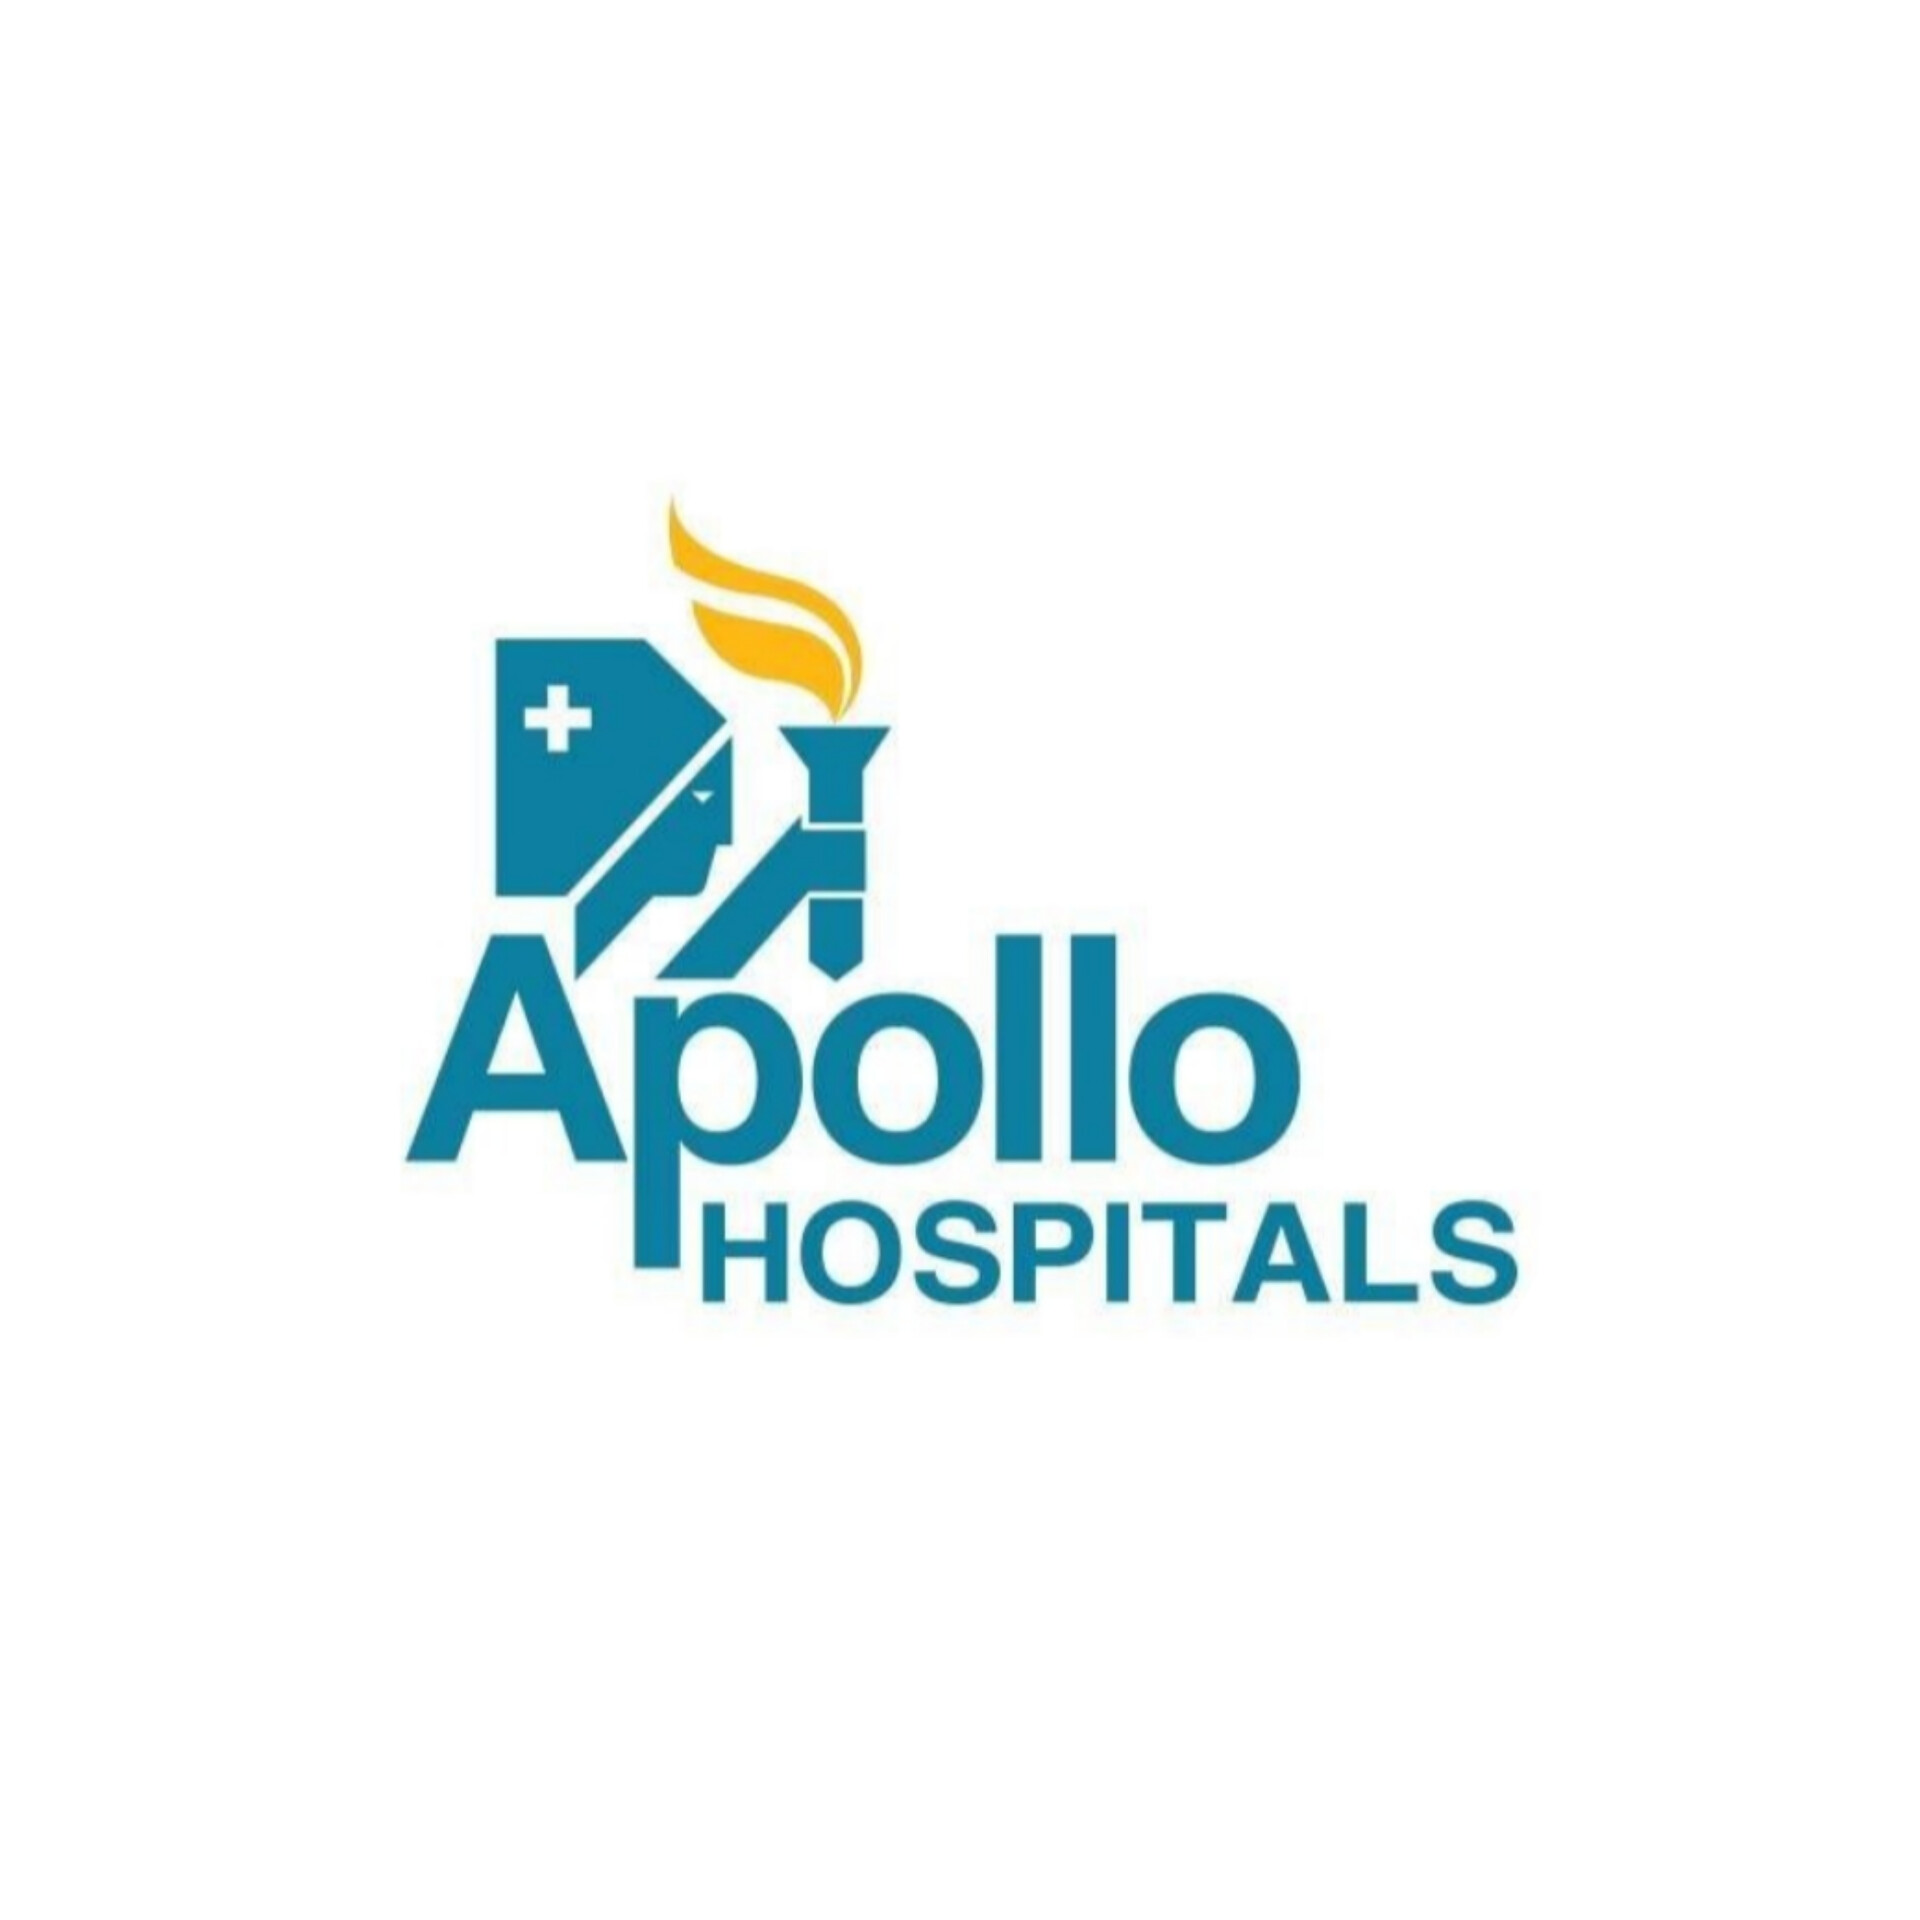 Apollo Hospitals: Promote India's Healthcare Revolution